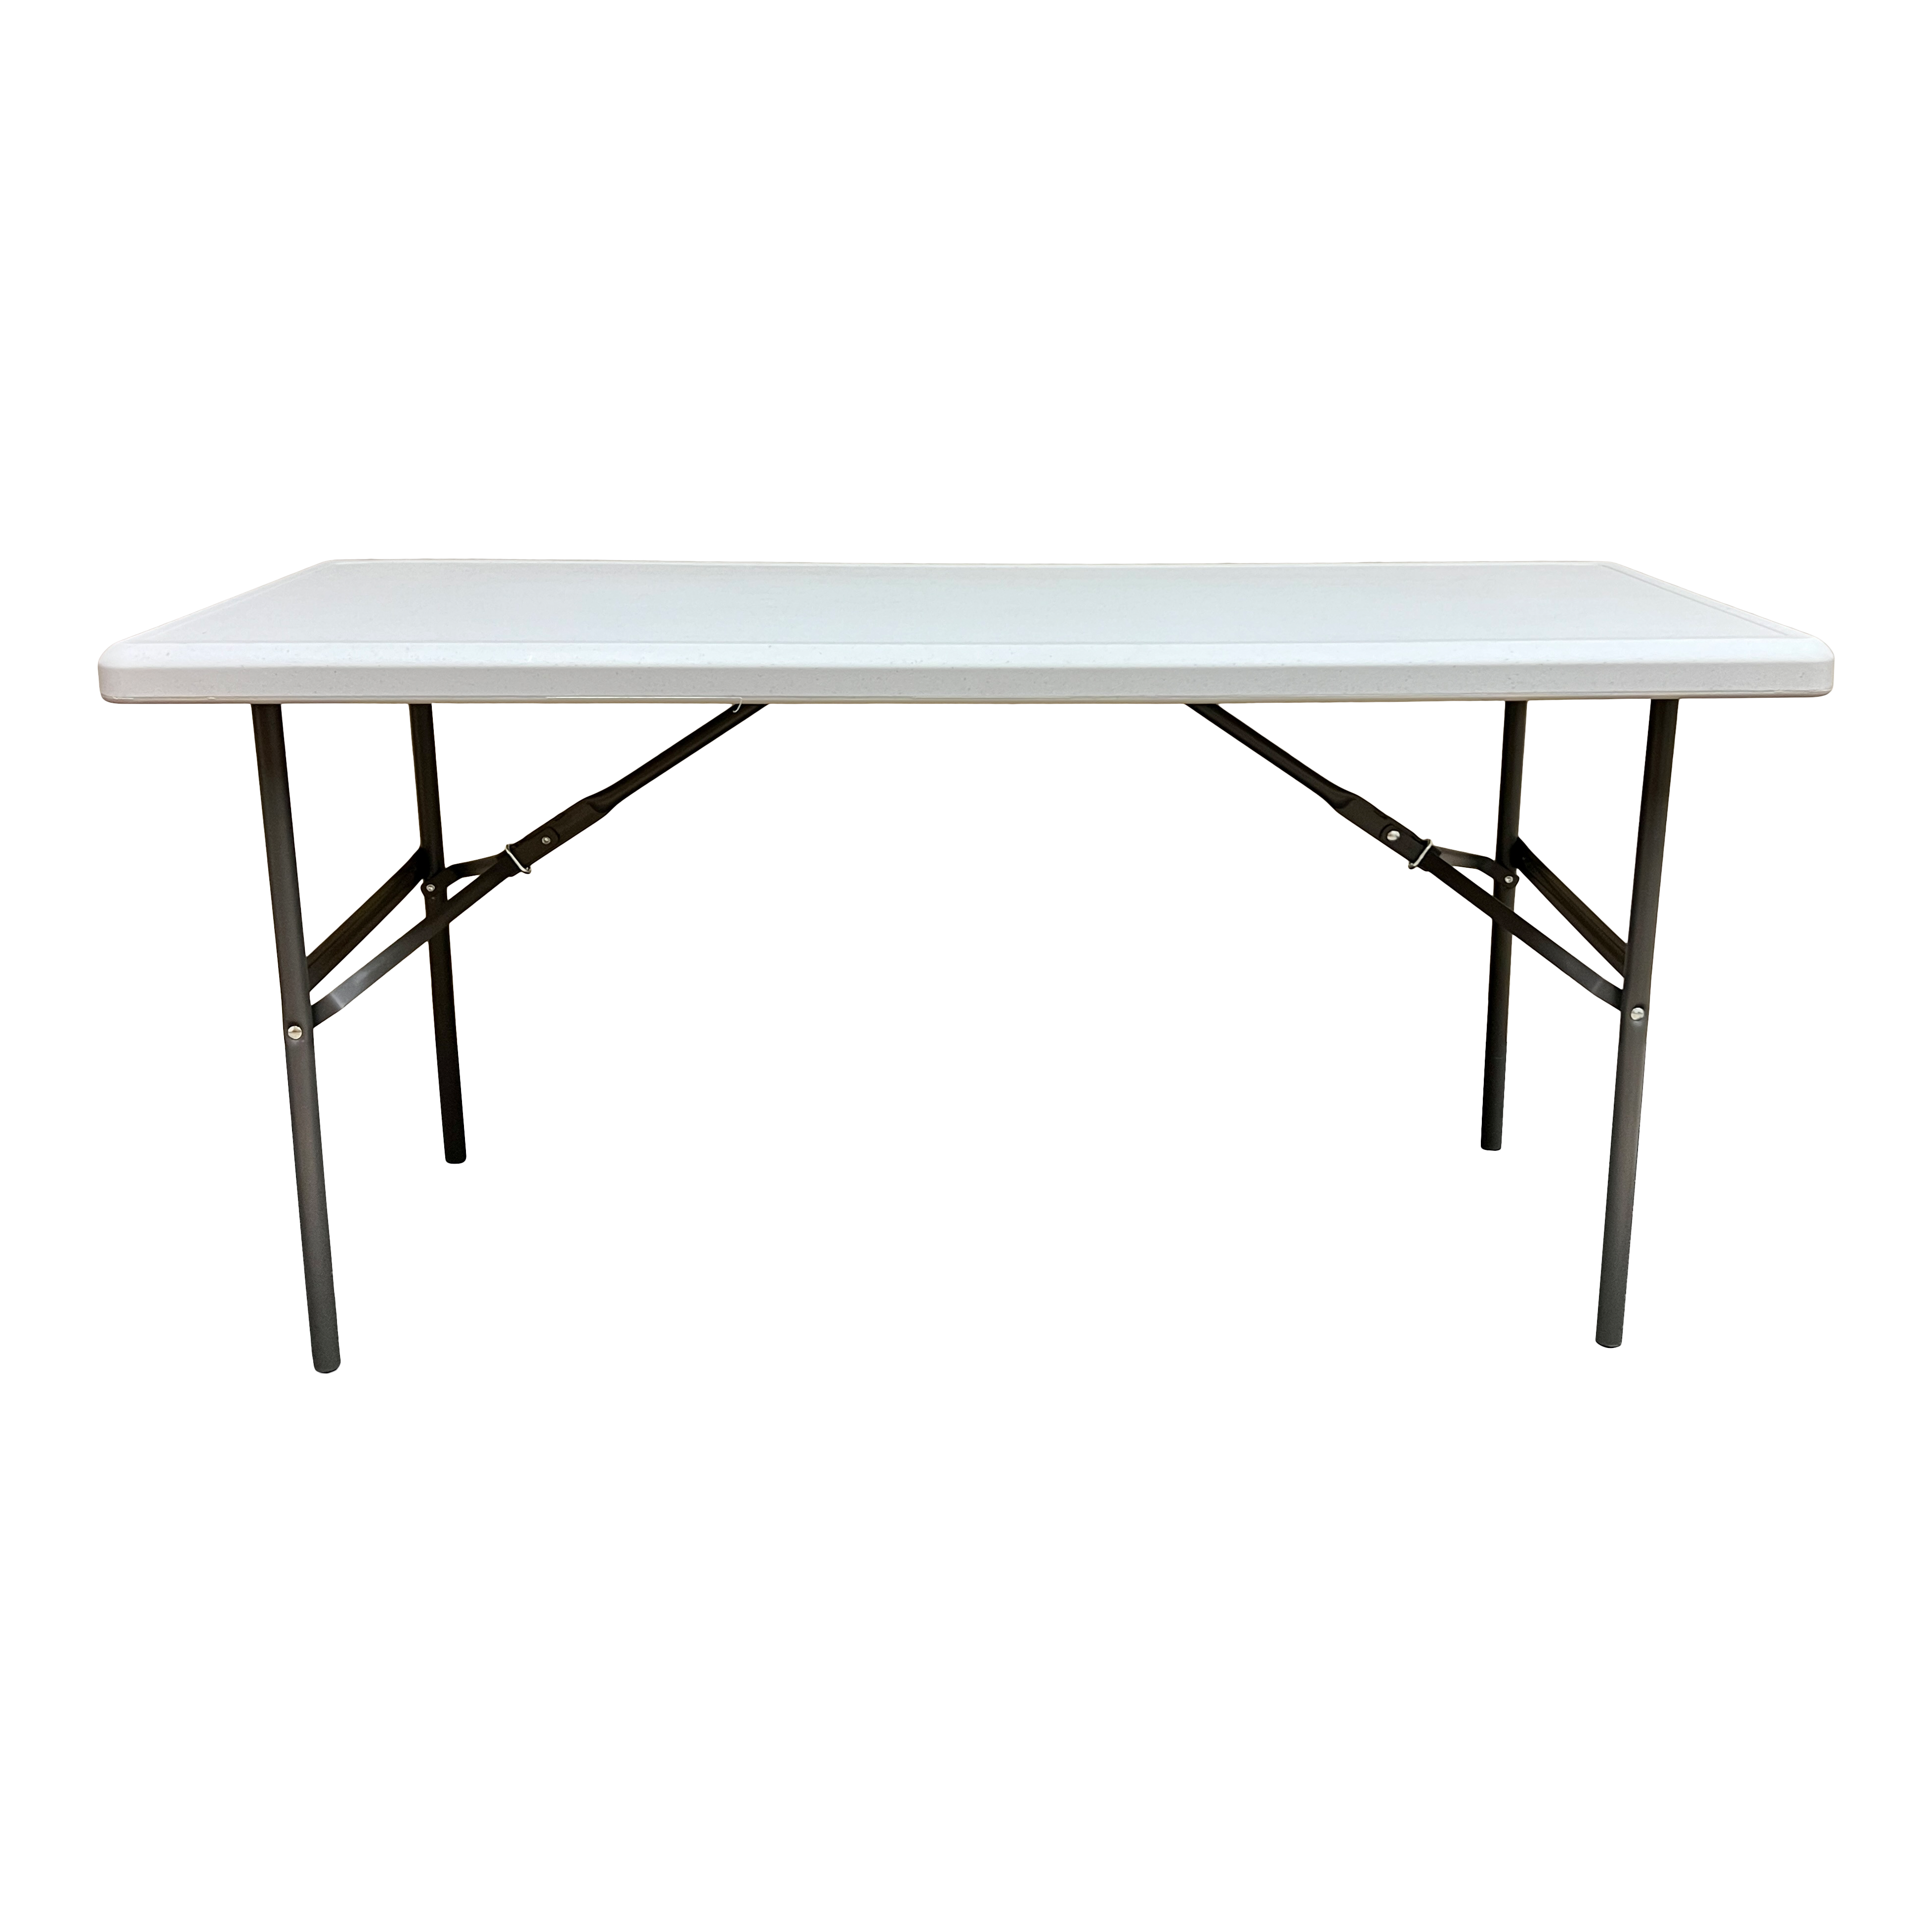 300 LB Folding Tables